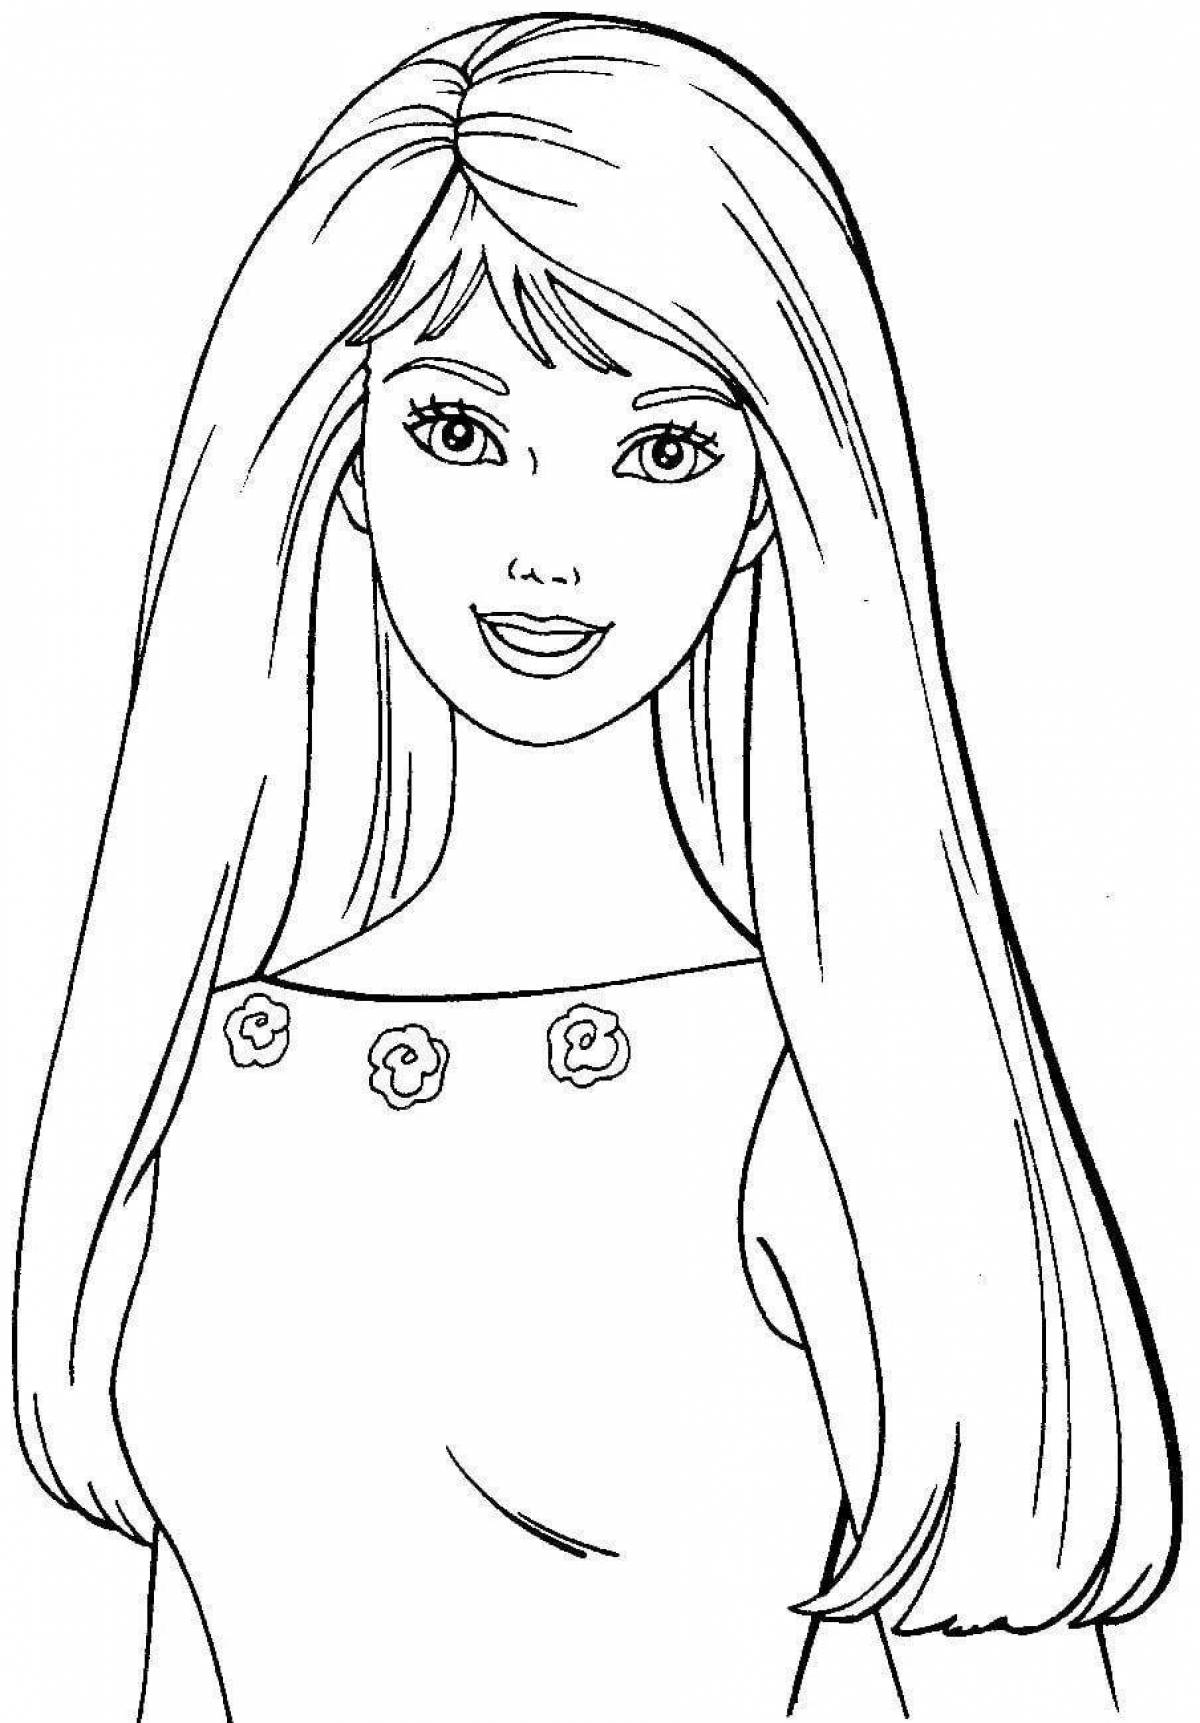 Joyful barbie face coloring page